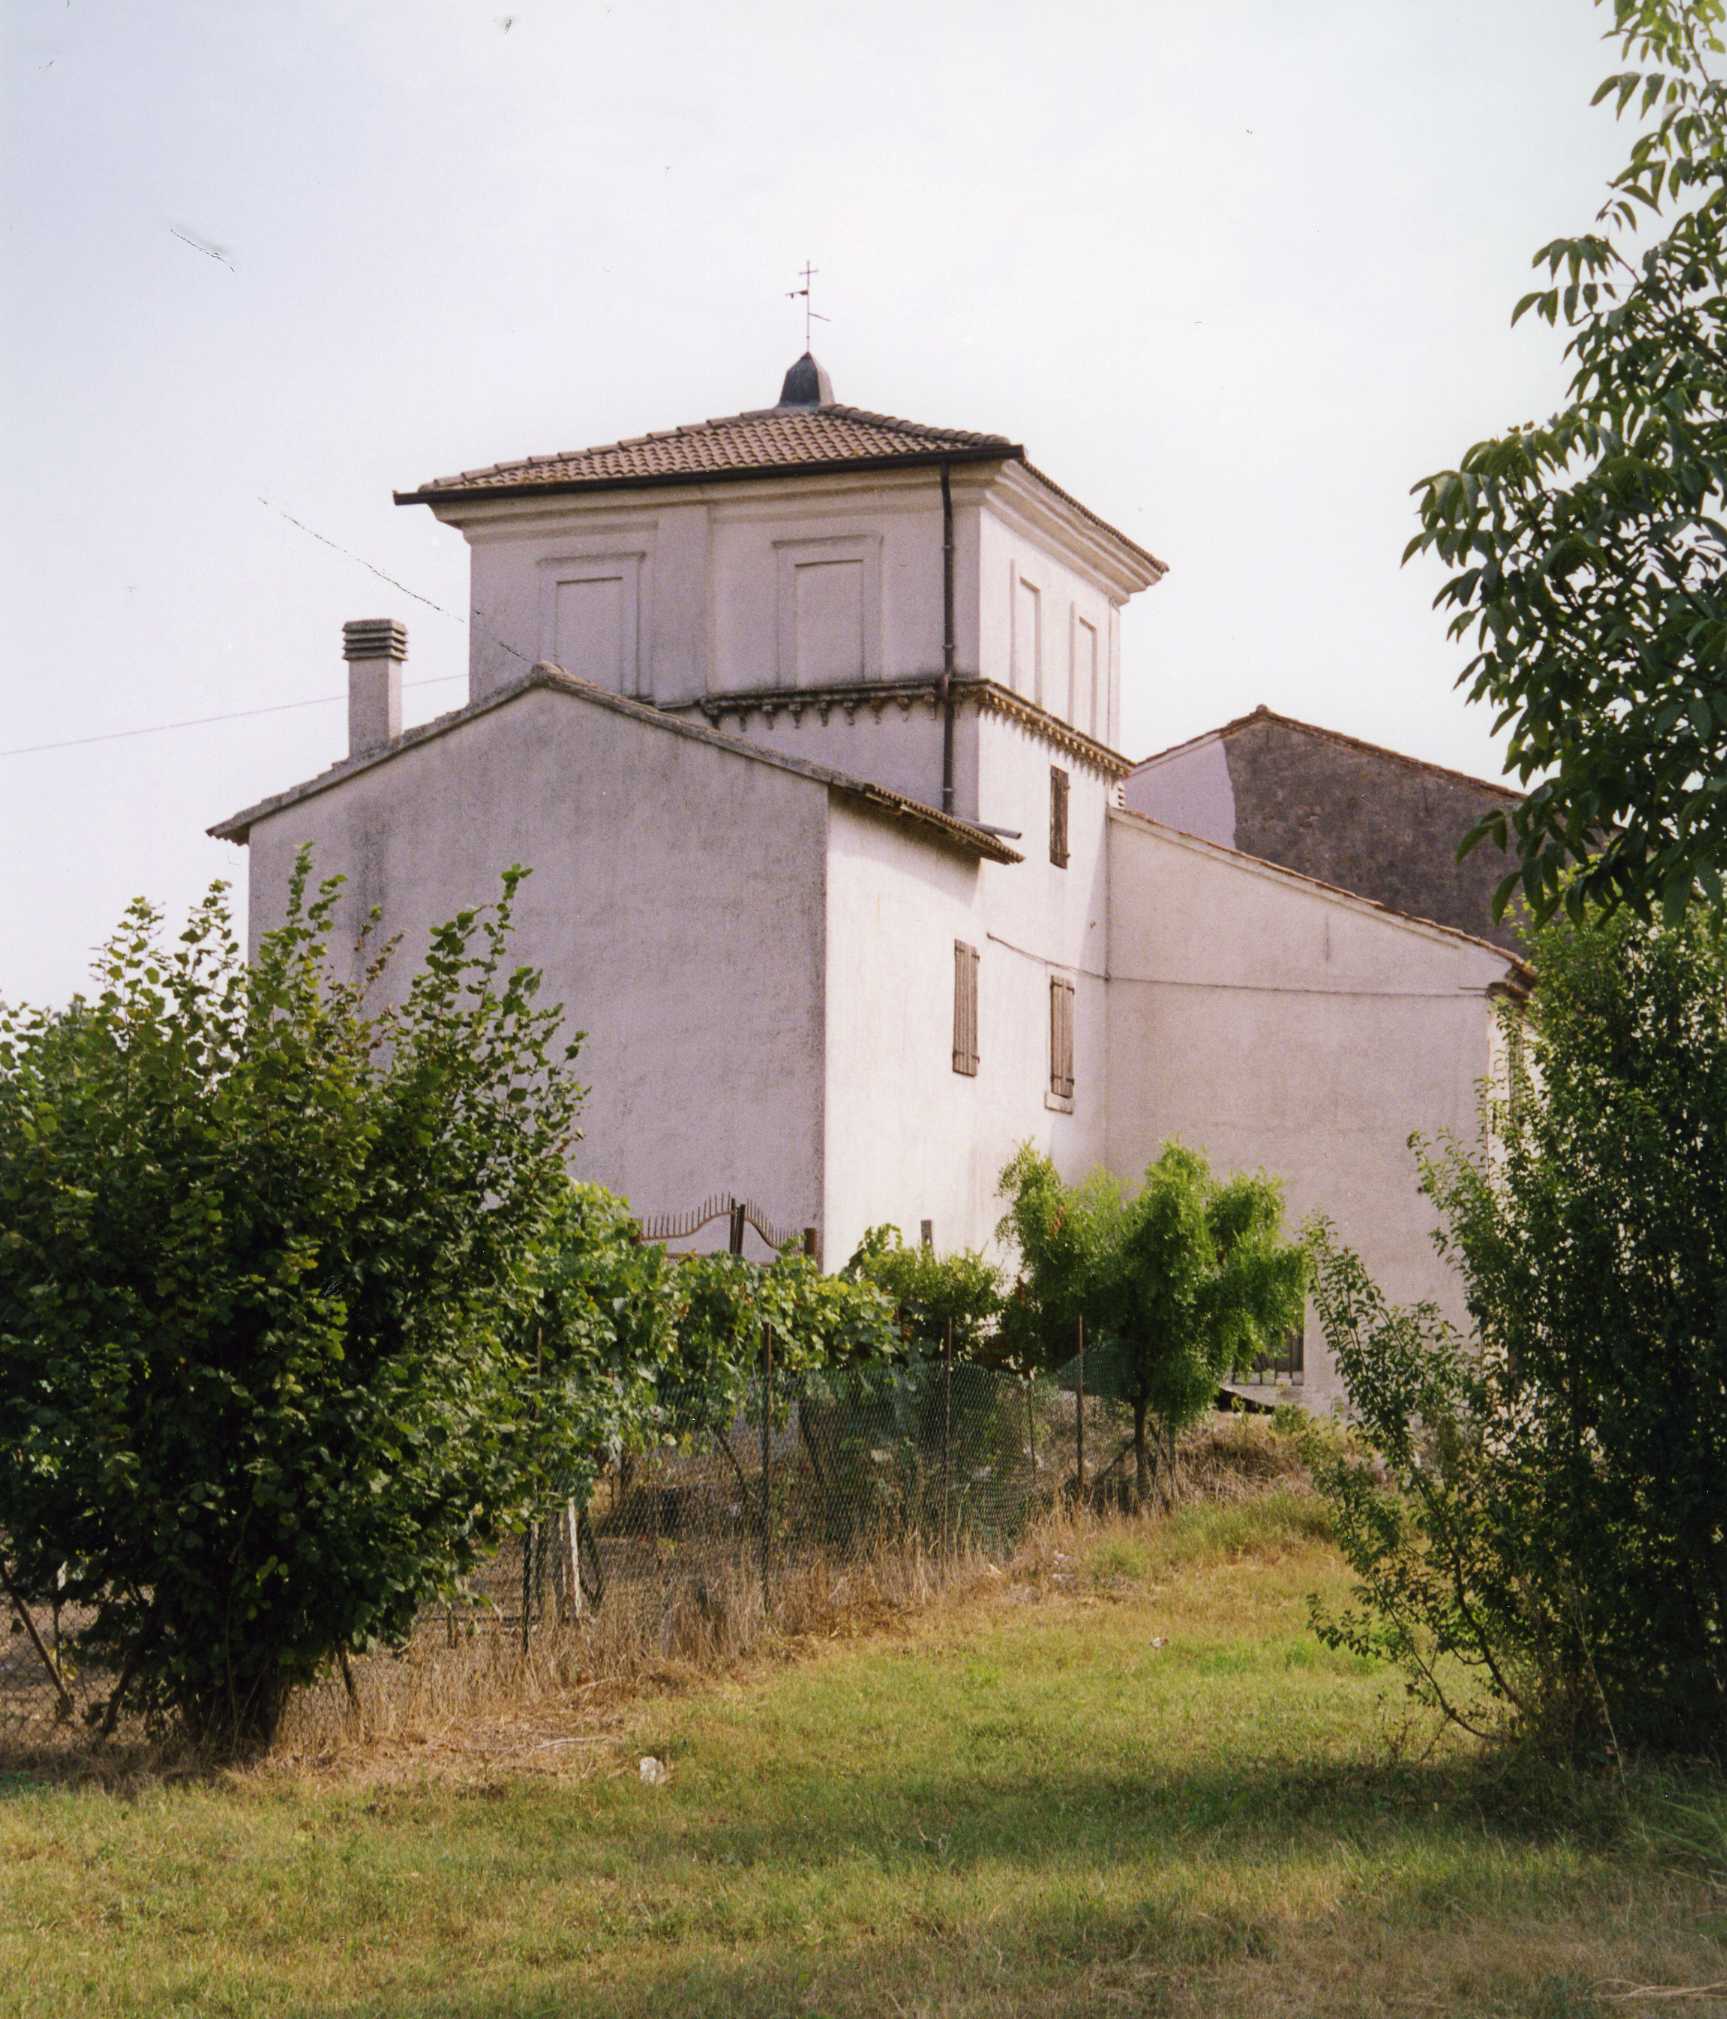 Casa Muttoni (casa, dominicale) - Trevenzuolo (VR)  (XV)